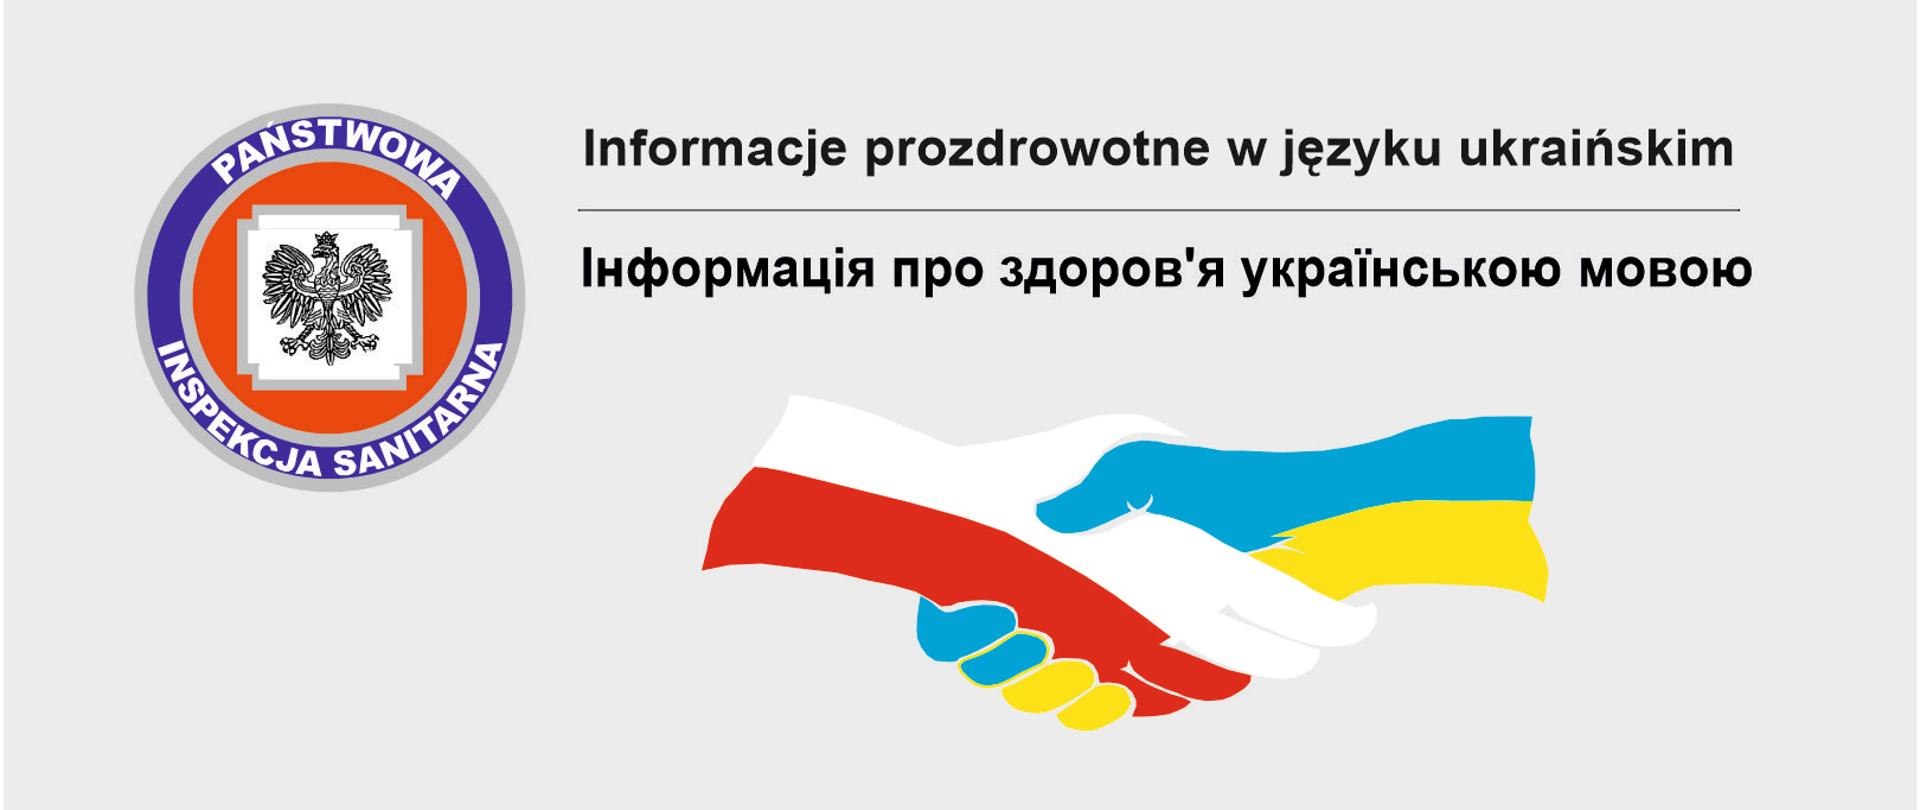 baner symbolizujący solidarność z Ukrainą ( w tle splecione dłonie, jedna w barwach flagi Polski, druga - flagi Ukrainy)